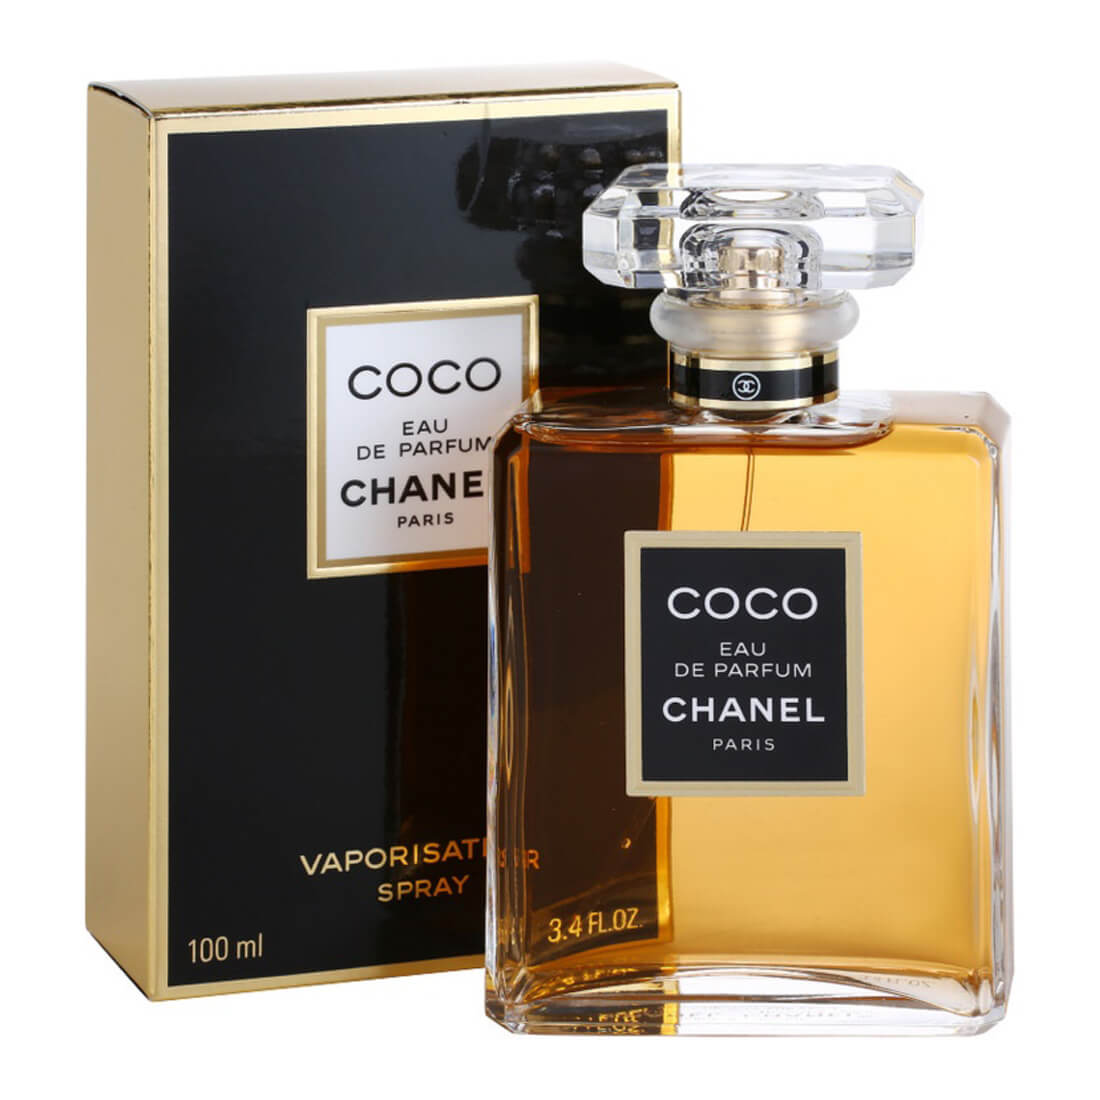 Chance Eau Tendre by Chanel for Women Eau De Parfum Spray 3.4 Ounces